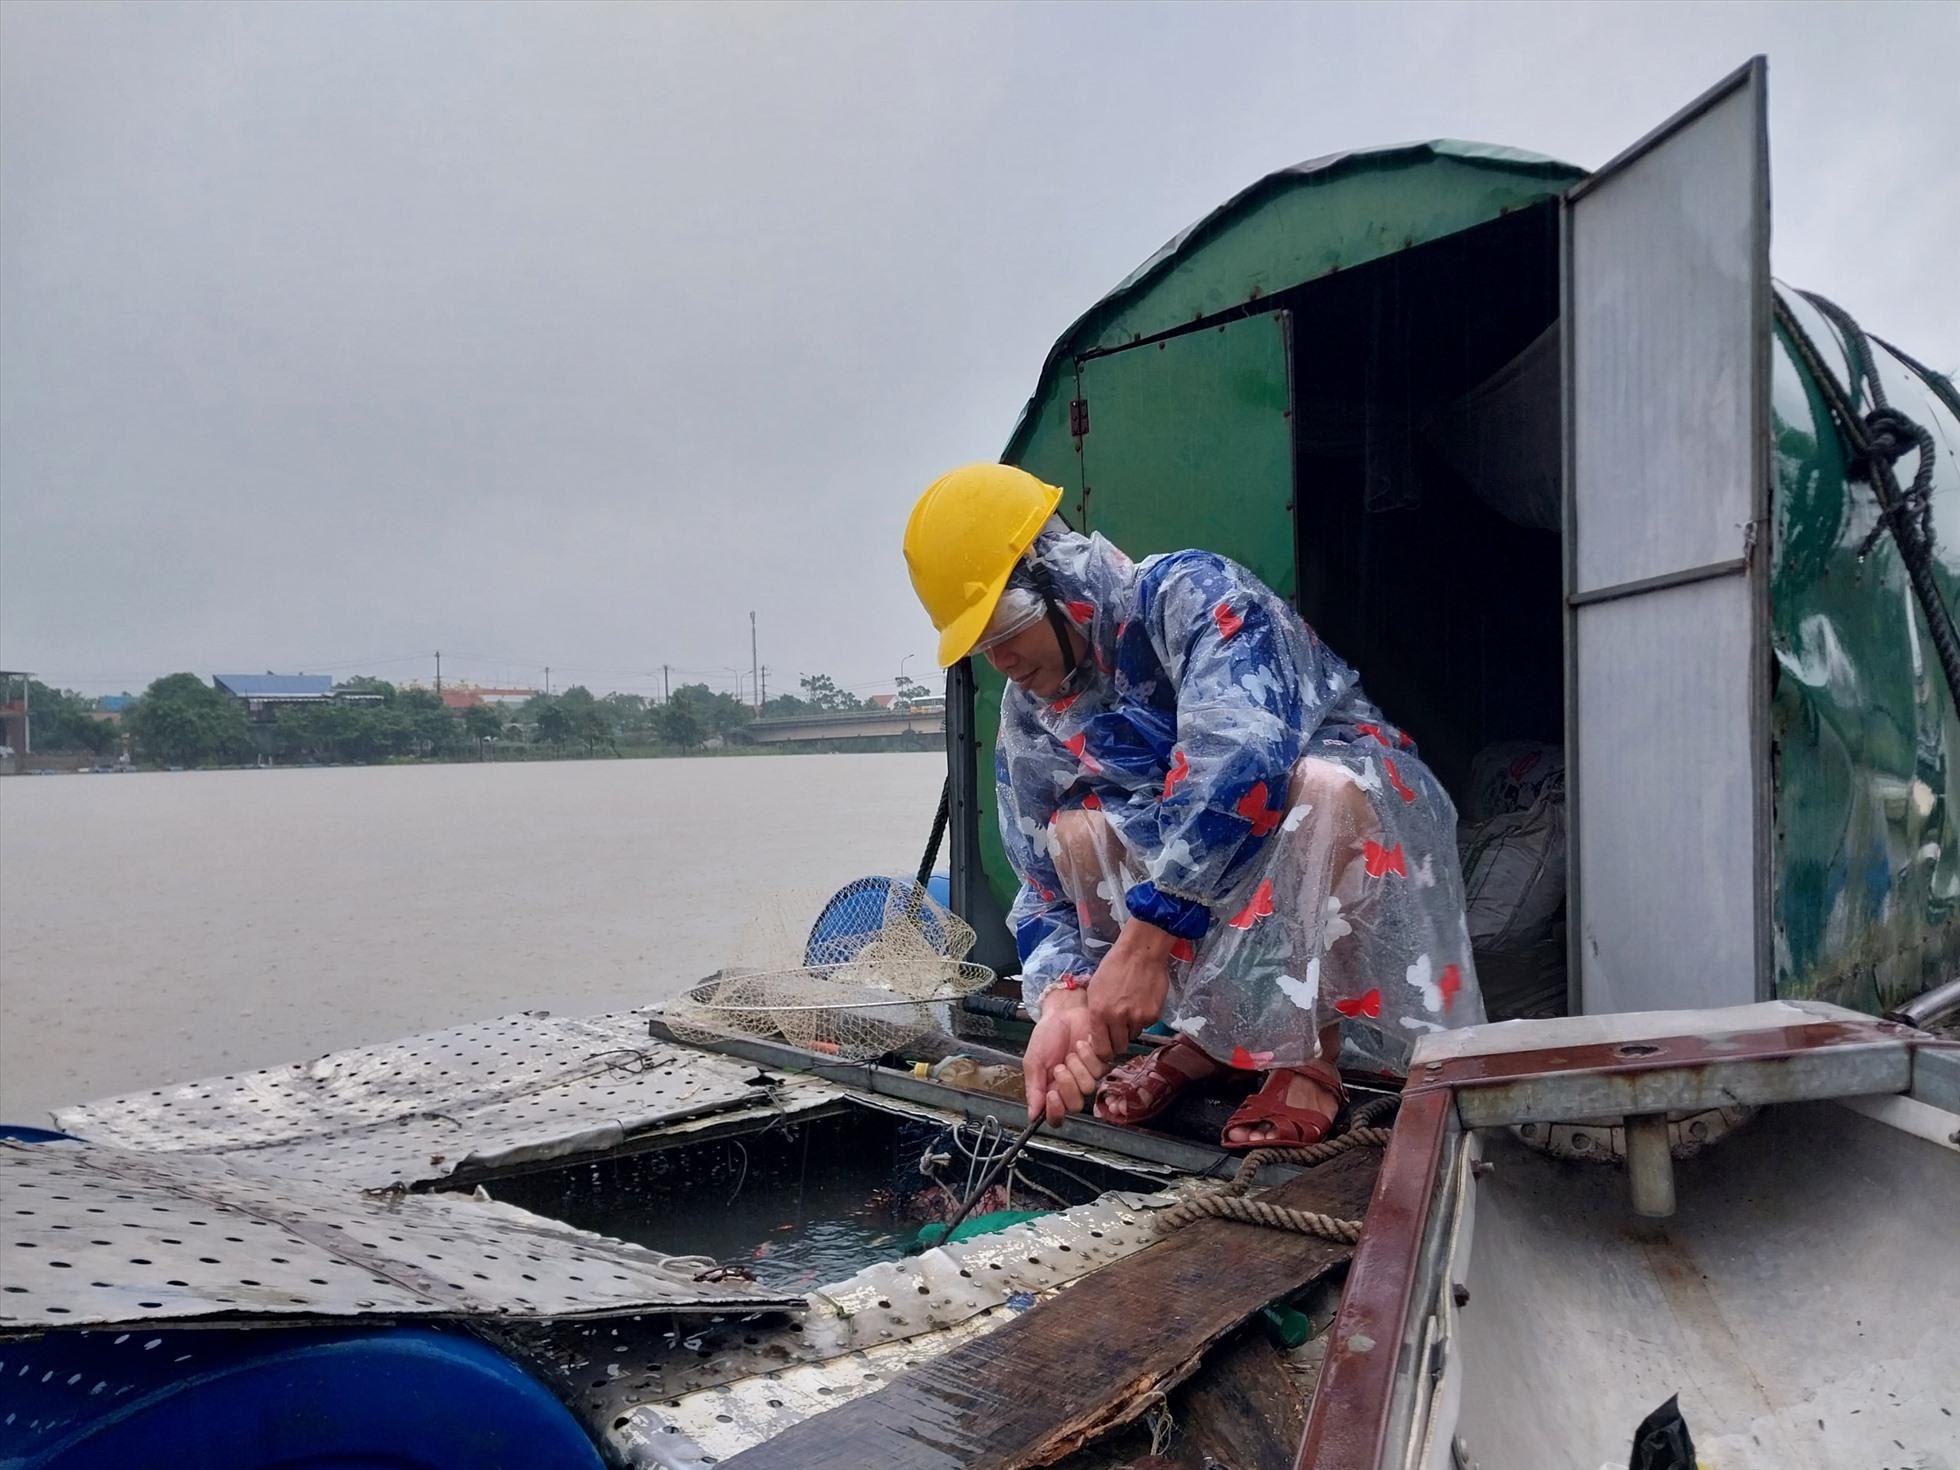 Theo Sở Nông nghiệp và Phát triển nông thôn (NN&PTNT), hiện còn hơn 1.860 ha diện tích ao nuôi trồng thủy sản (trên tổng số hơn 6.660 ha toàn tỉnh), hơn 2.800 lồng cá nuôi và hơn 2.500 ha sắn, rau vụ đông chưa thu hoạch tập trung nhiều ở các địa phương Quảng Điền, Phong Điền, Hương Trà. Sở đã chỉ đạo các địa phương thu hoạch thủy sản thương phẩm và ứng phó với mưa bão, lũ lụt, đồng thời đã kiểm tra thực tế chỉ đạo công tác neo các lồng nuôi đảm bảo an toàn.